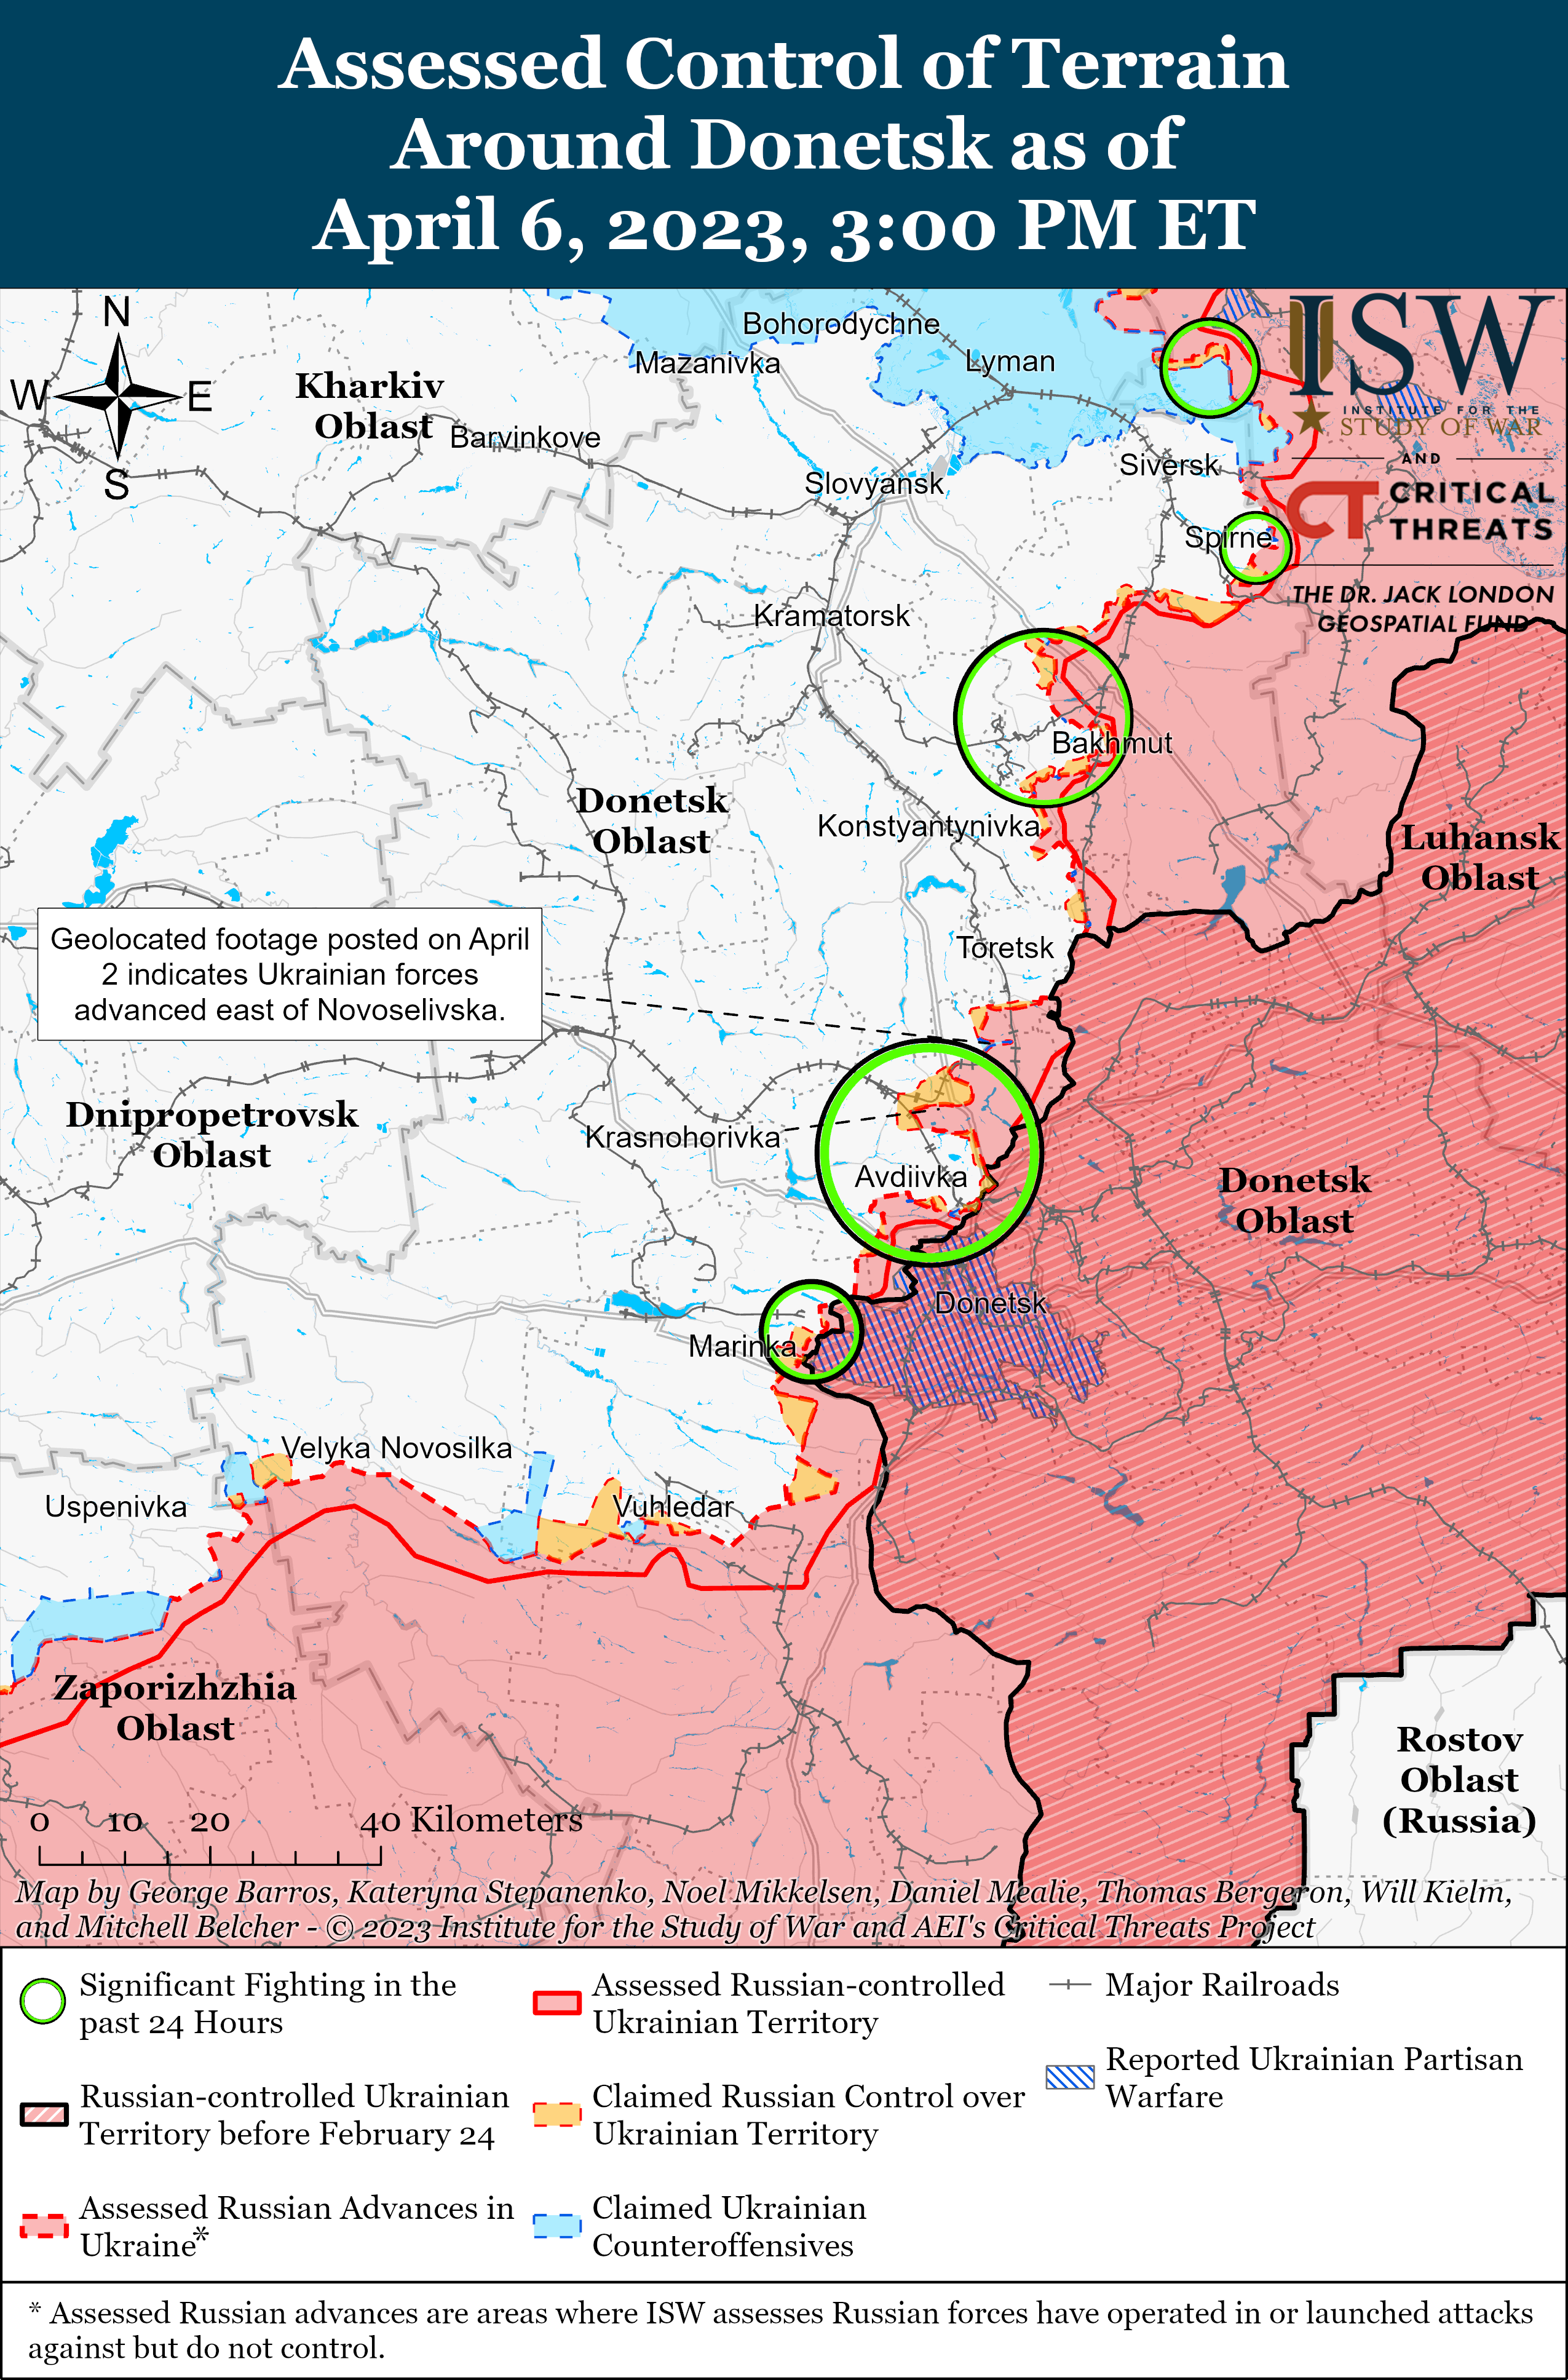 Россияне потеряли 4 тысячи солдат возле Авдеевки: карты боев ISW